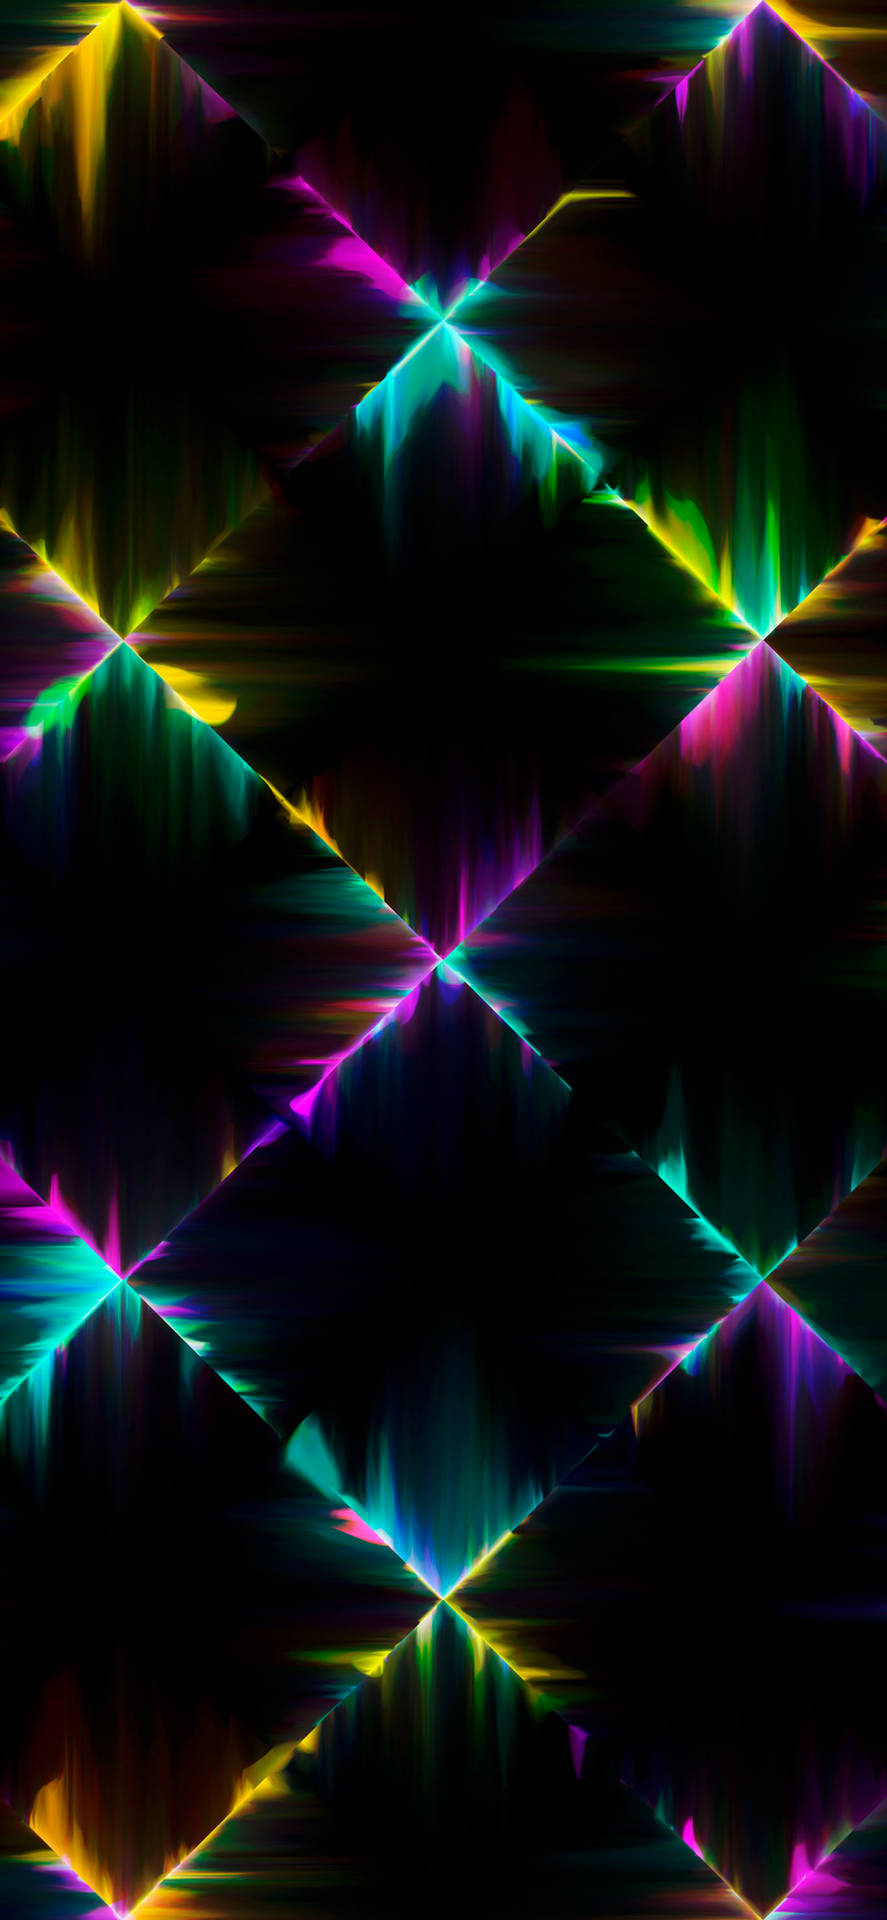 Geometrischesmuster, Neon-ästhetik, Iphone Wallpaper